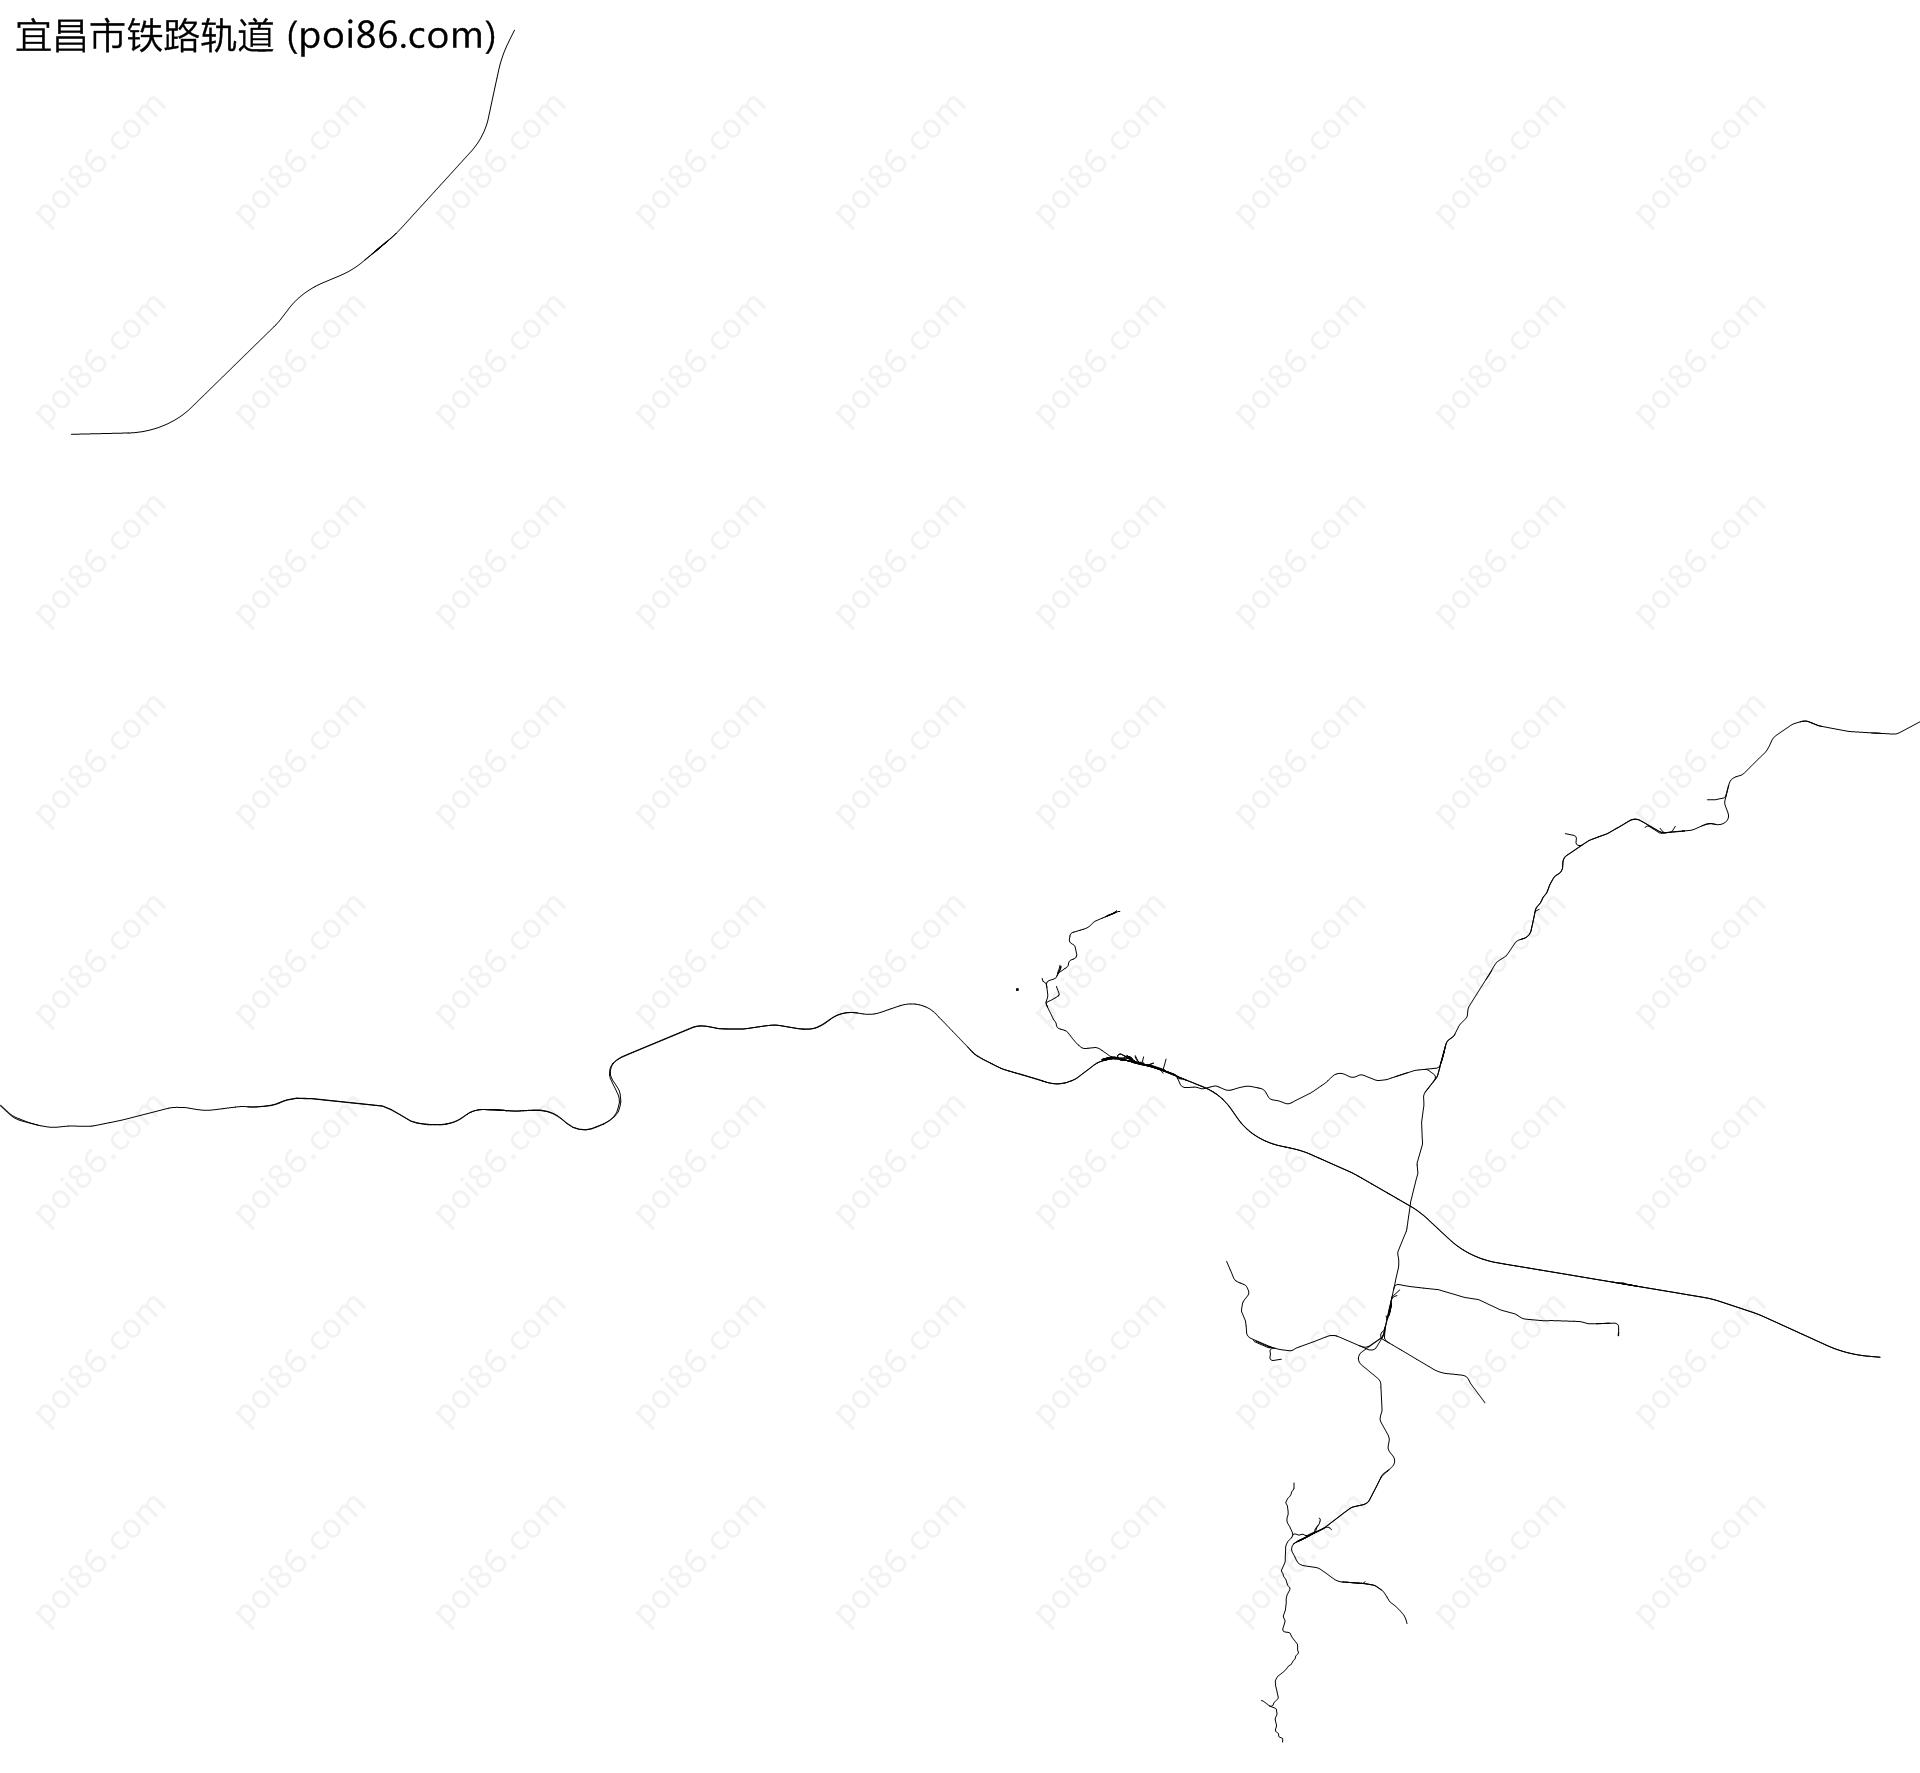 宜昌市铁路轨道地图